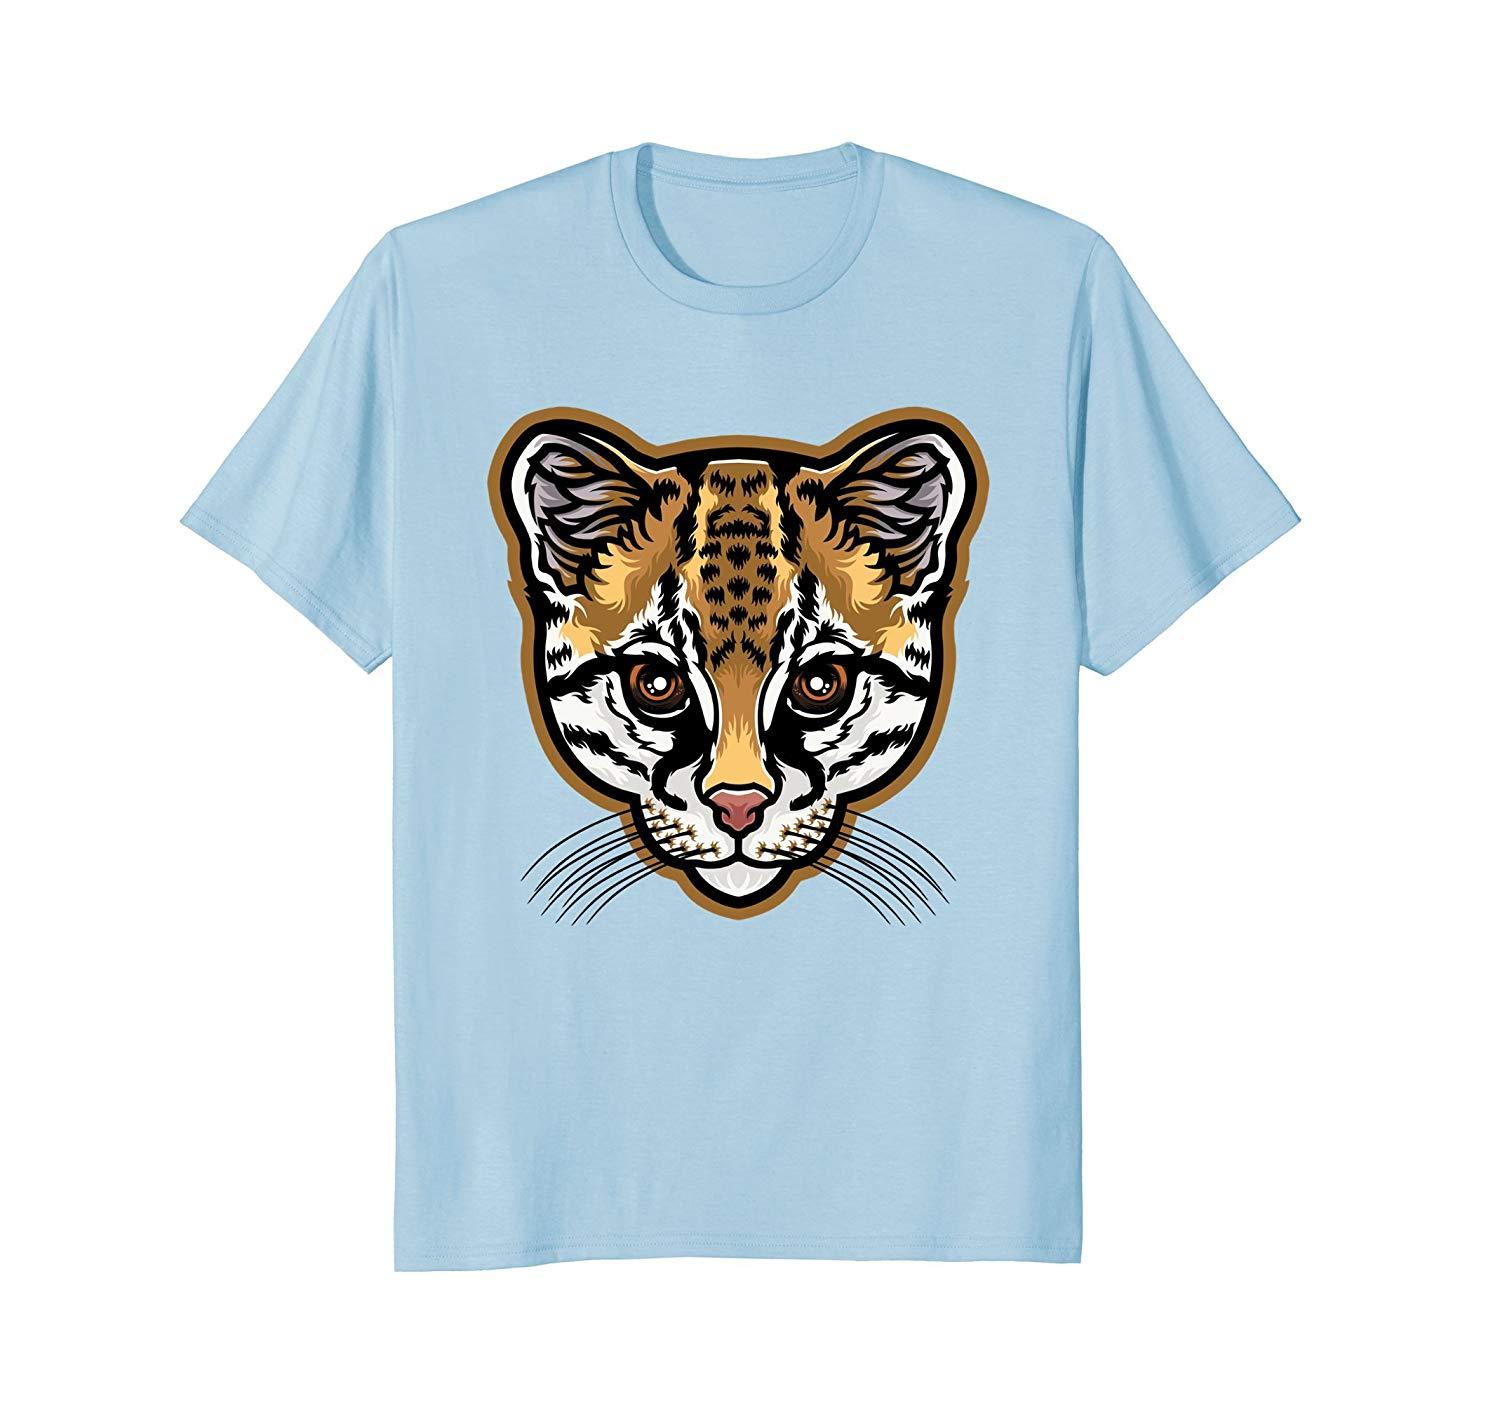 Ocelot Clothing Logo - Ocelot Dwarf Leopard Wild Cat South American Animal T